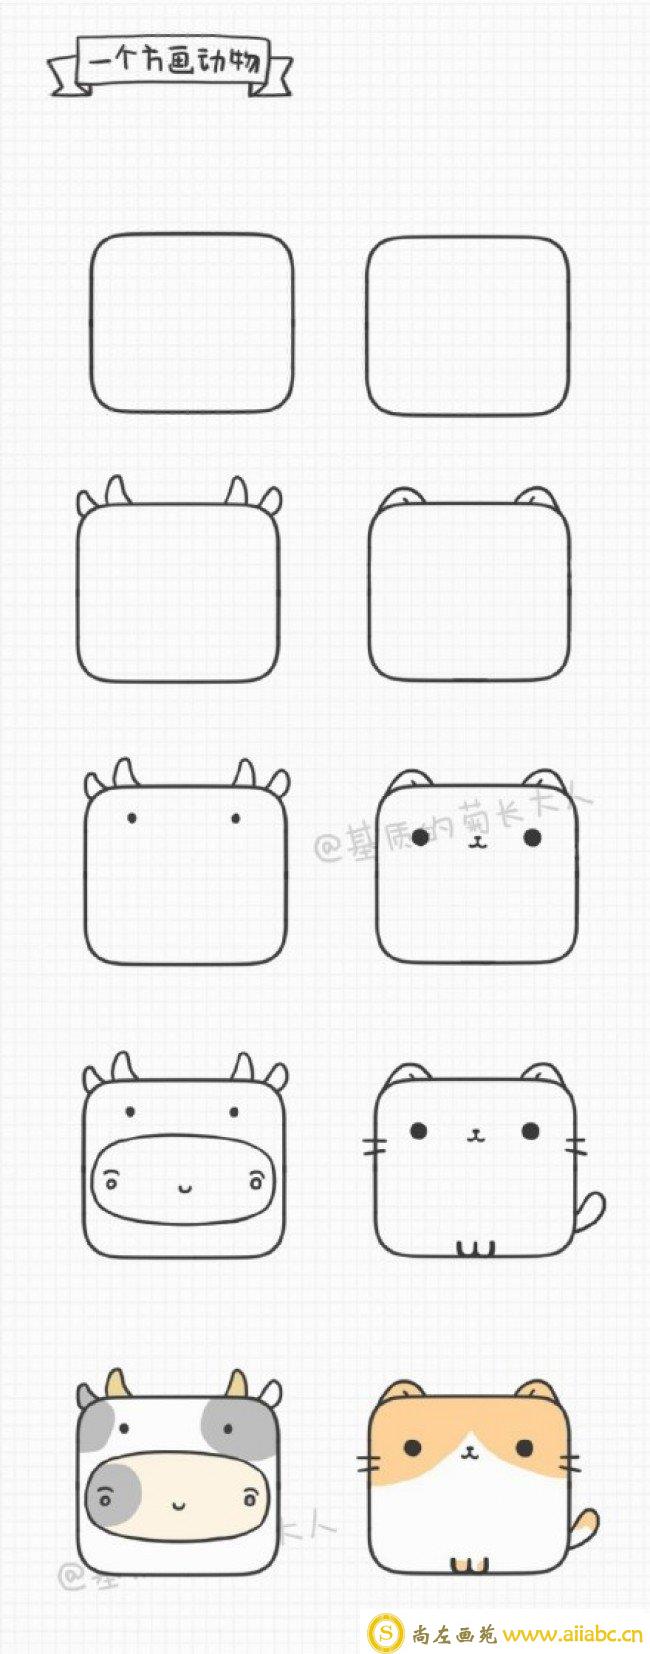 小方块能画什么 超多可爱小动物的简笔画头像画法教程_